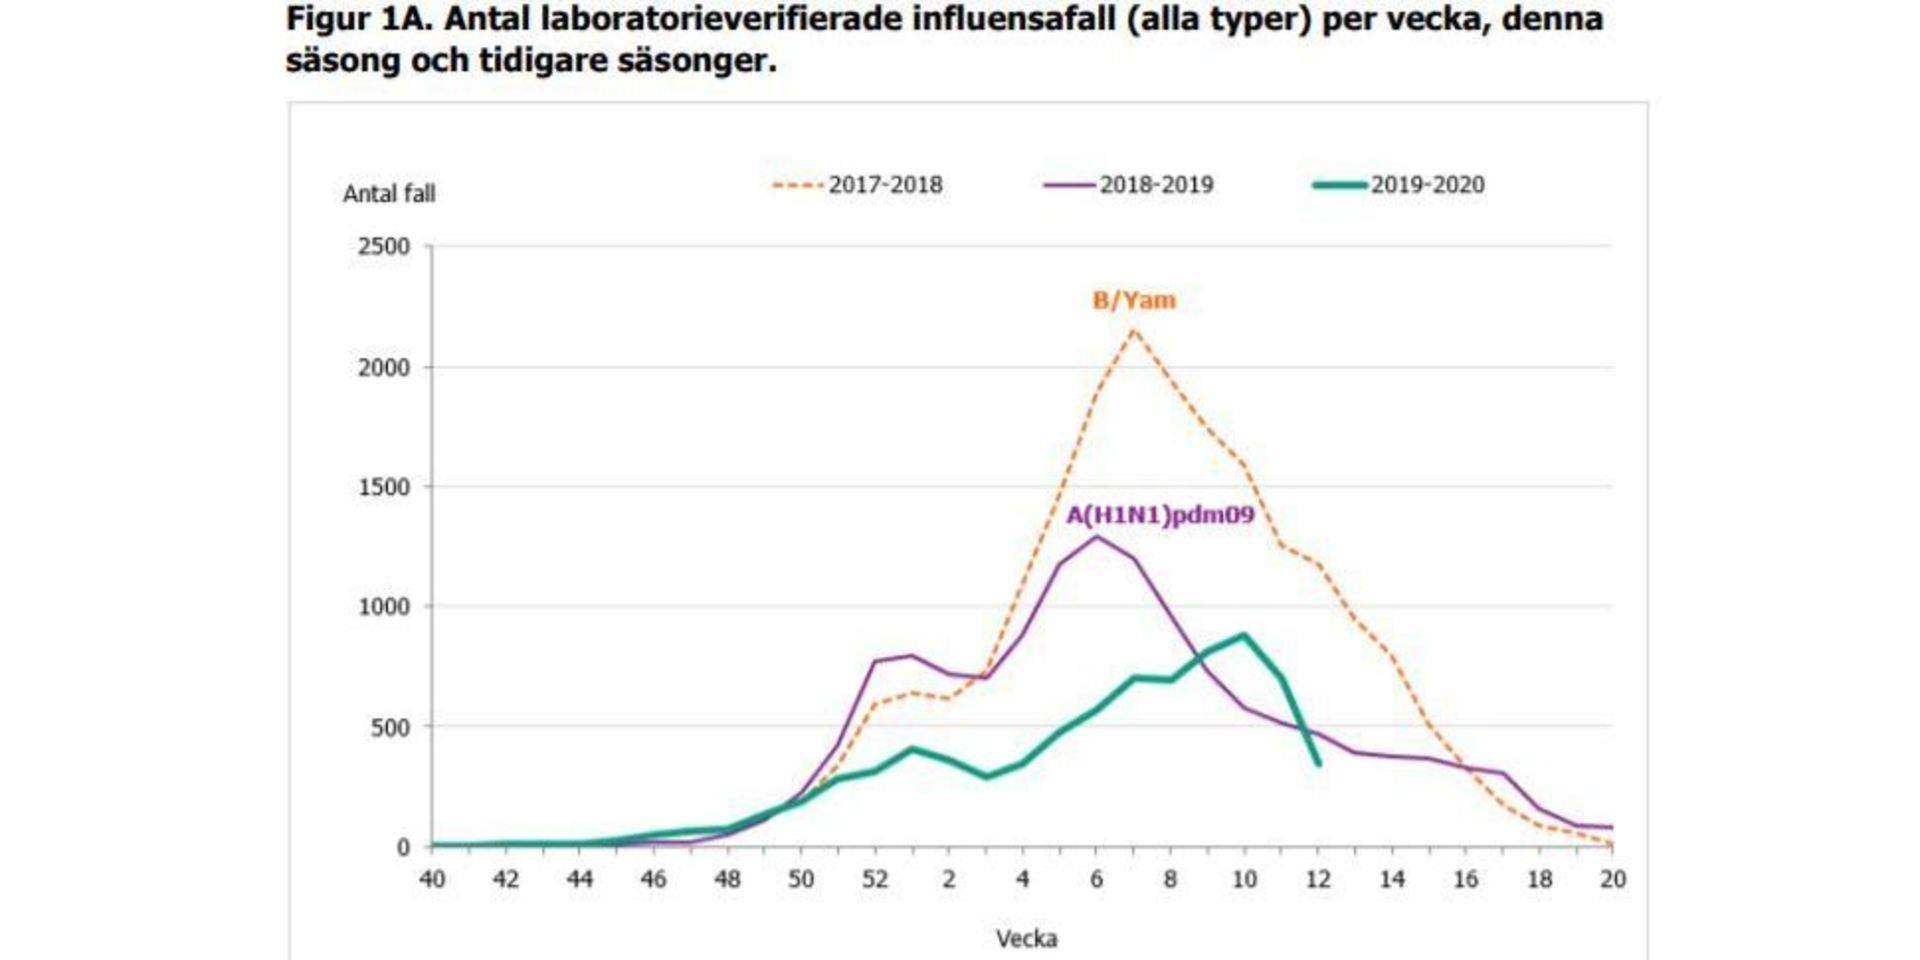 Antalet laboratorieverifierade influensafall per vecka, denna säsong och tidigare säsonger.